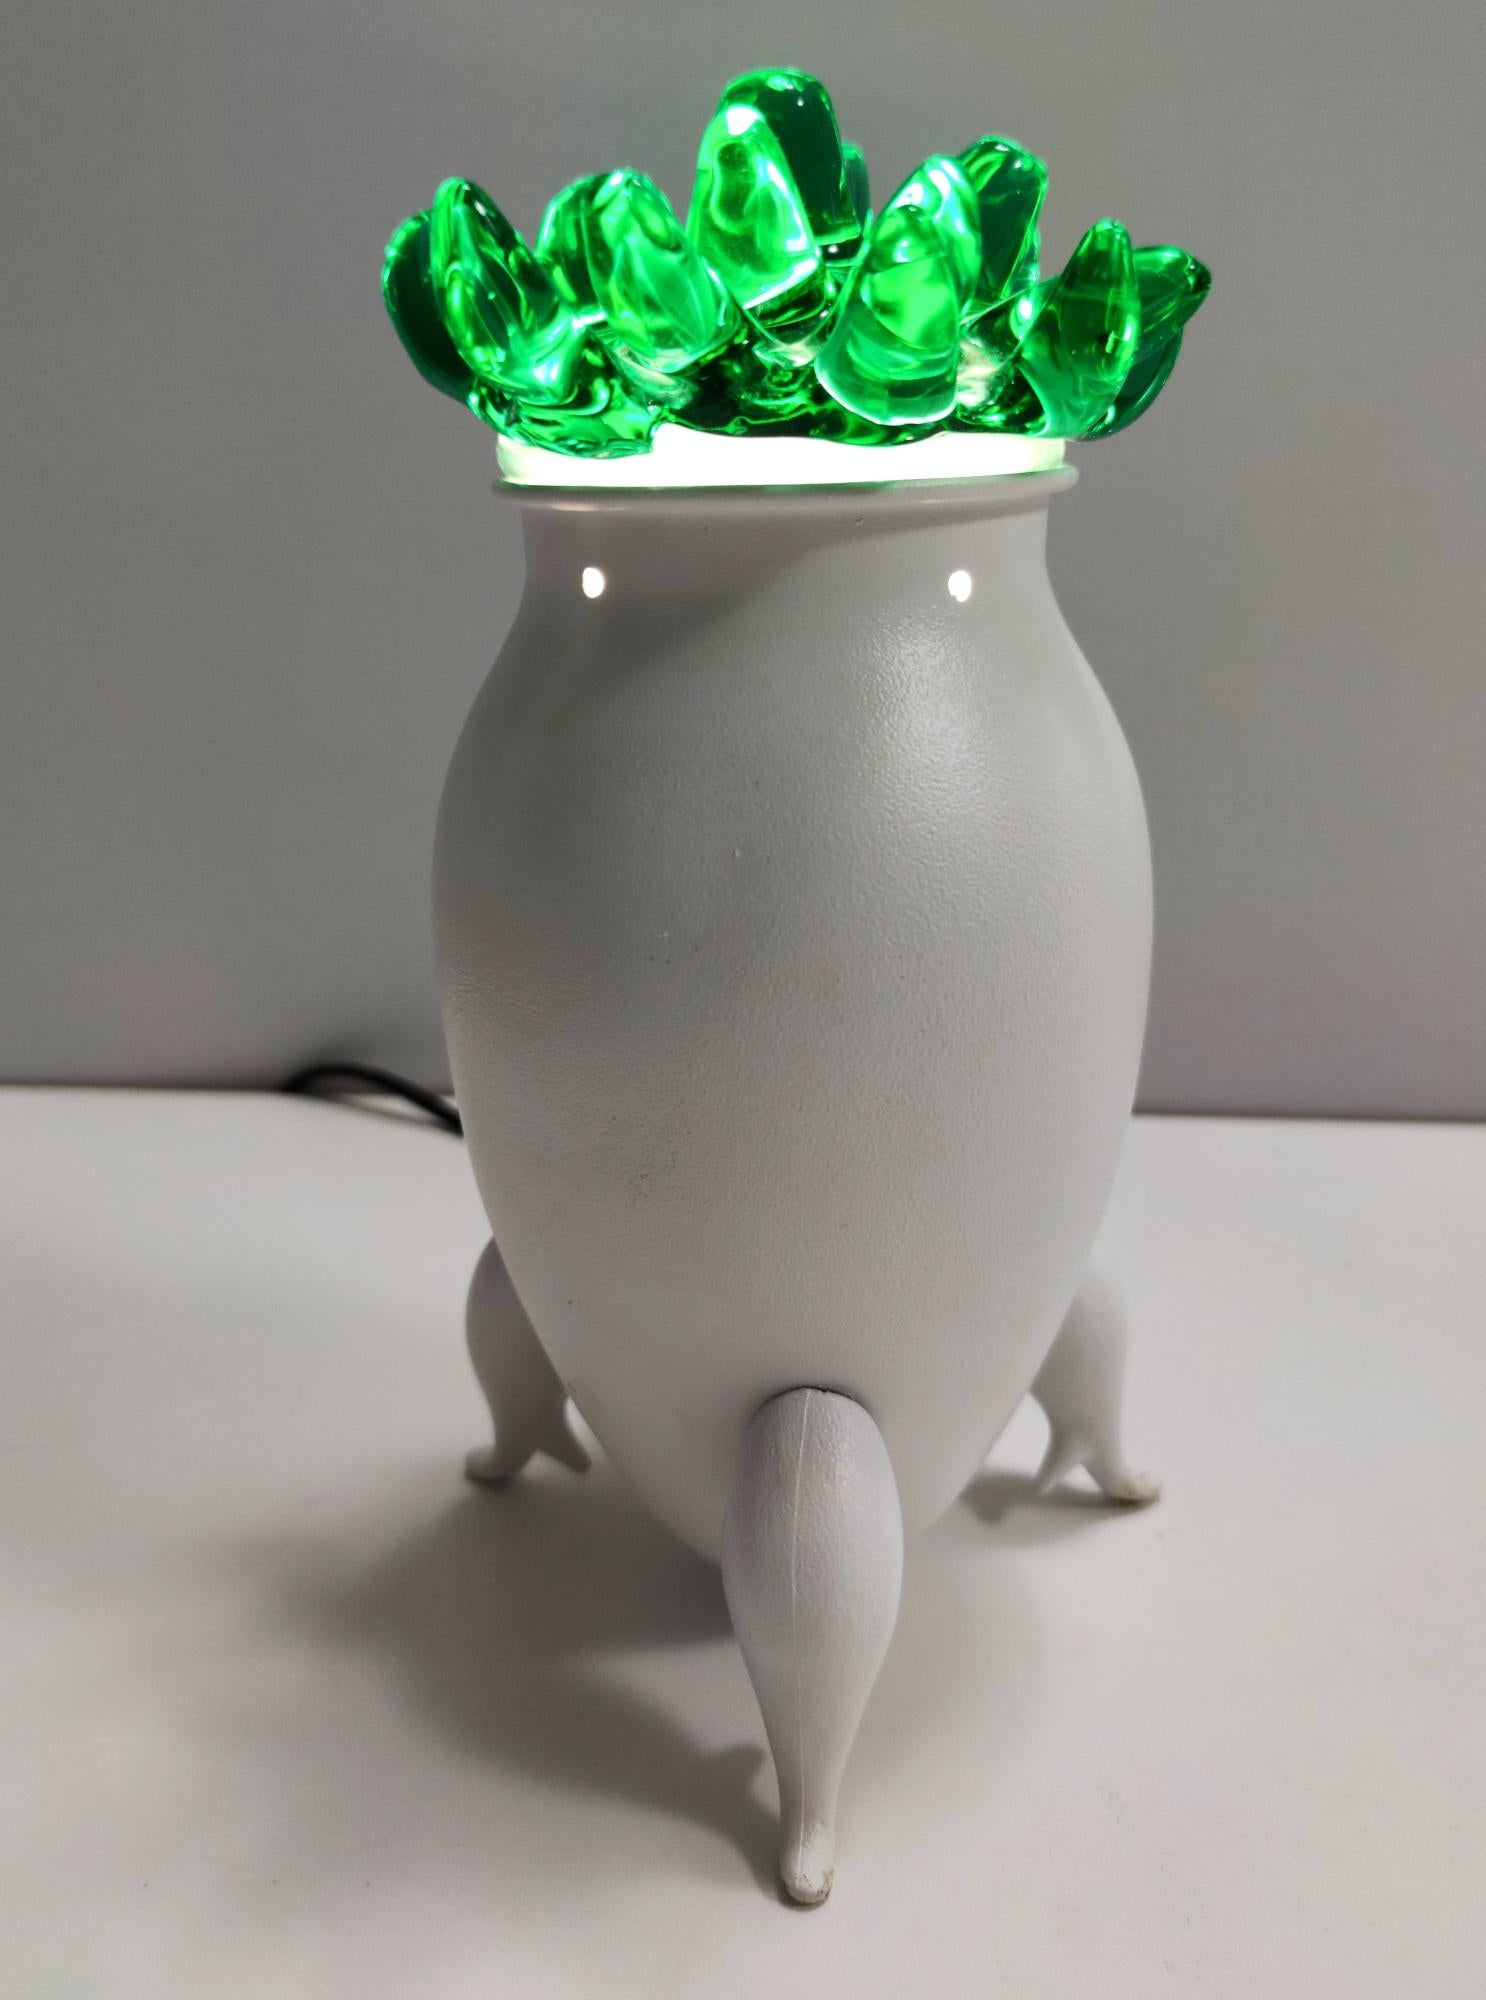 Fabriqué en Italie, années 1980. 
Cette lampe de table excentrique est fabriquée en verre de Murano et en aluminium verni blanc. 
Il ressemble à une plante en pot ou à une créature particulière. 

Il s'agit d'une pièce d'époque, qui peut donc